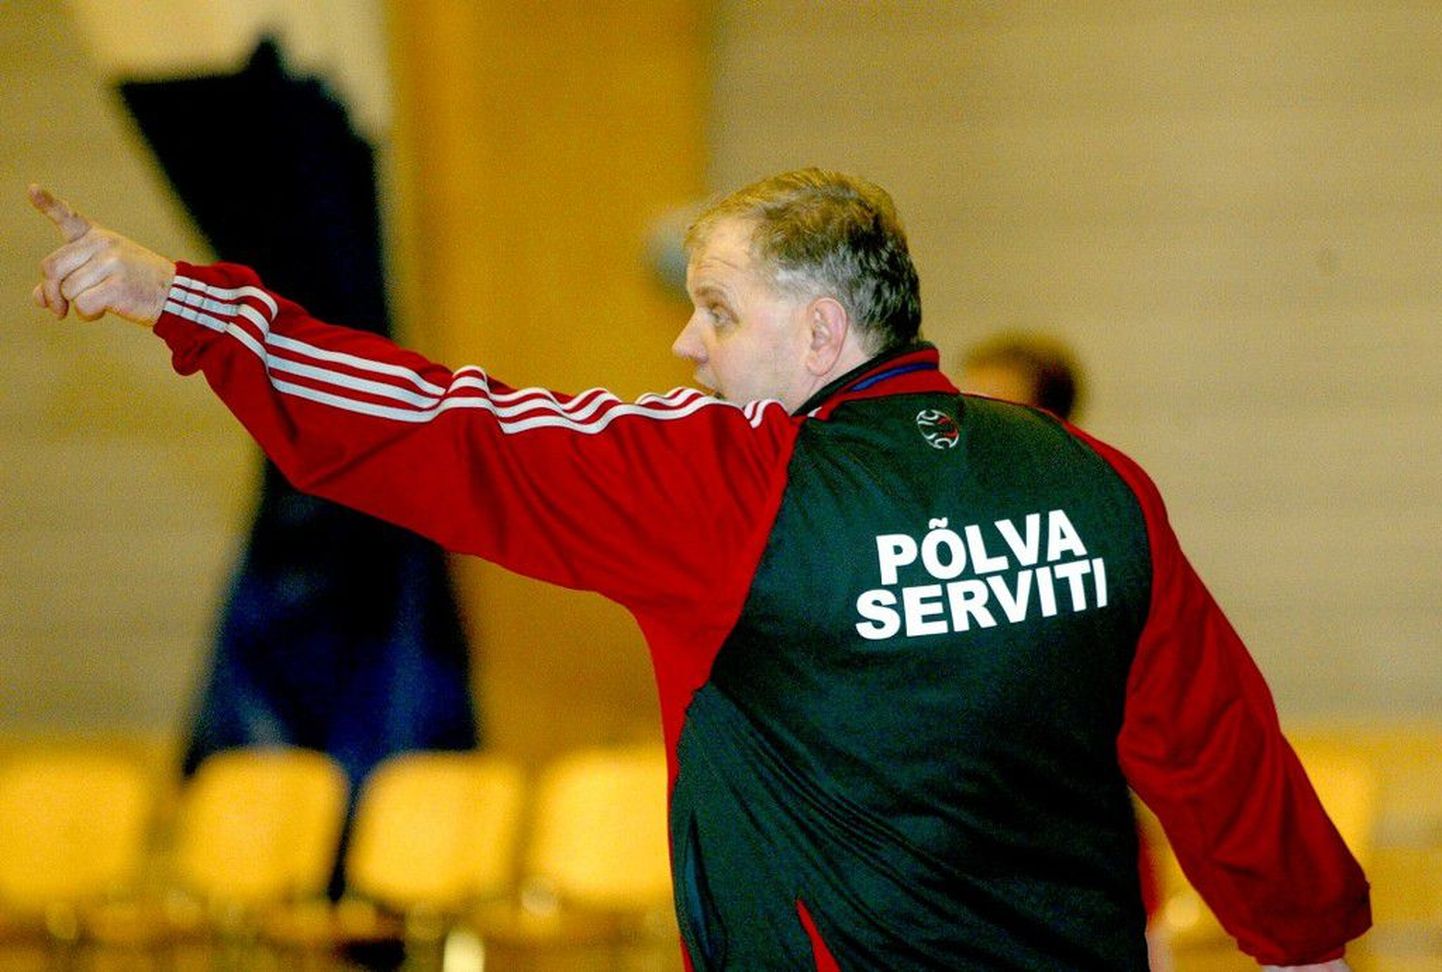 Põlva Serviti käsipallimeeskonna peatreener Kalmer Musting.